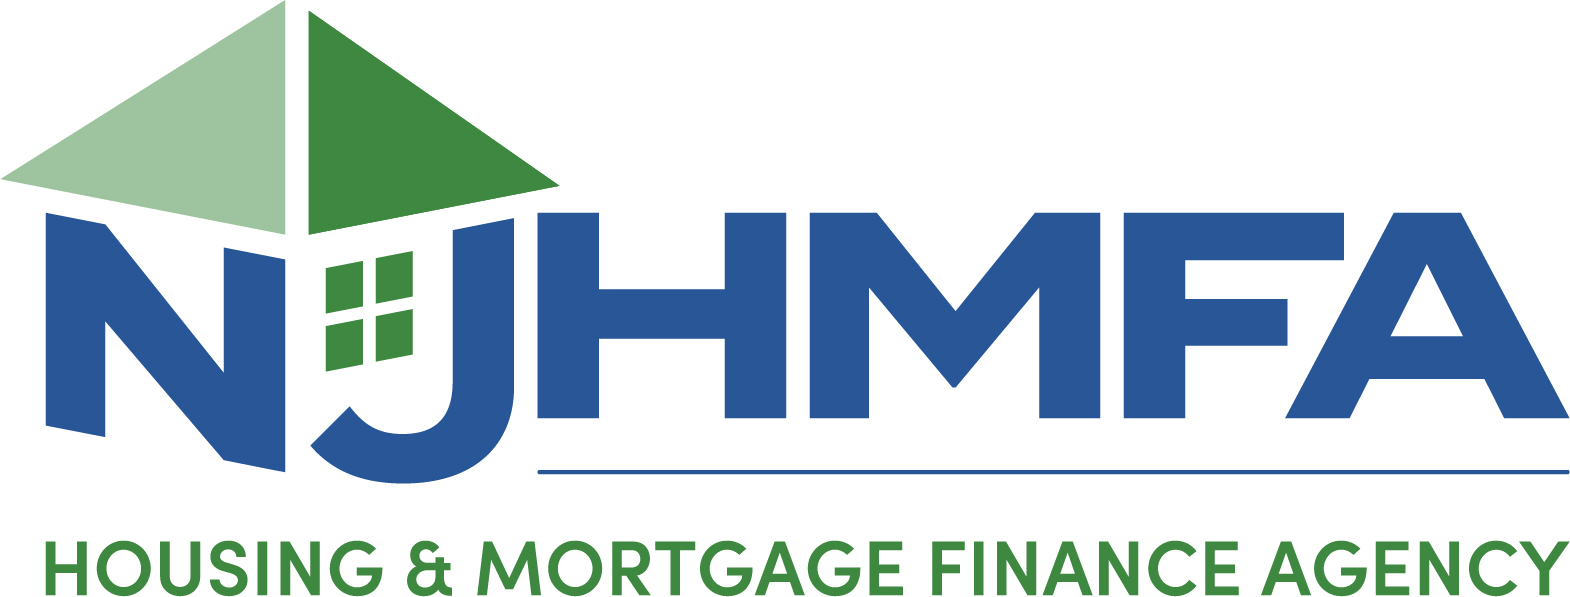 Agencia de Vivienda y Financiamiento de Hipotecas de New Jersey